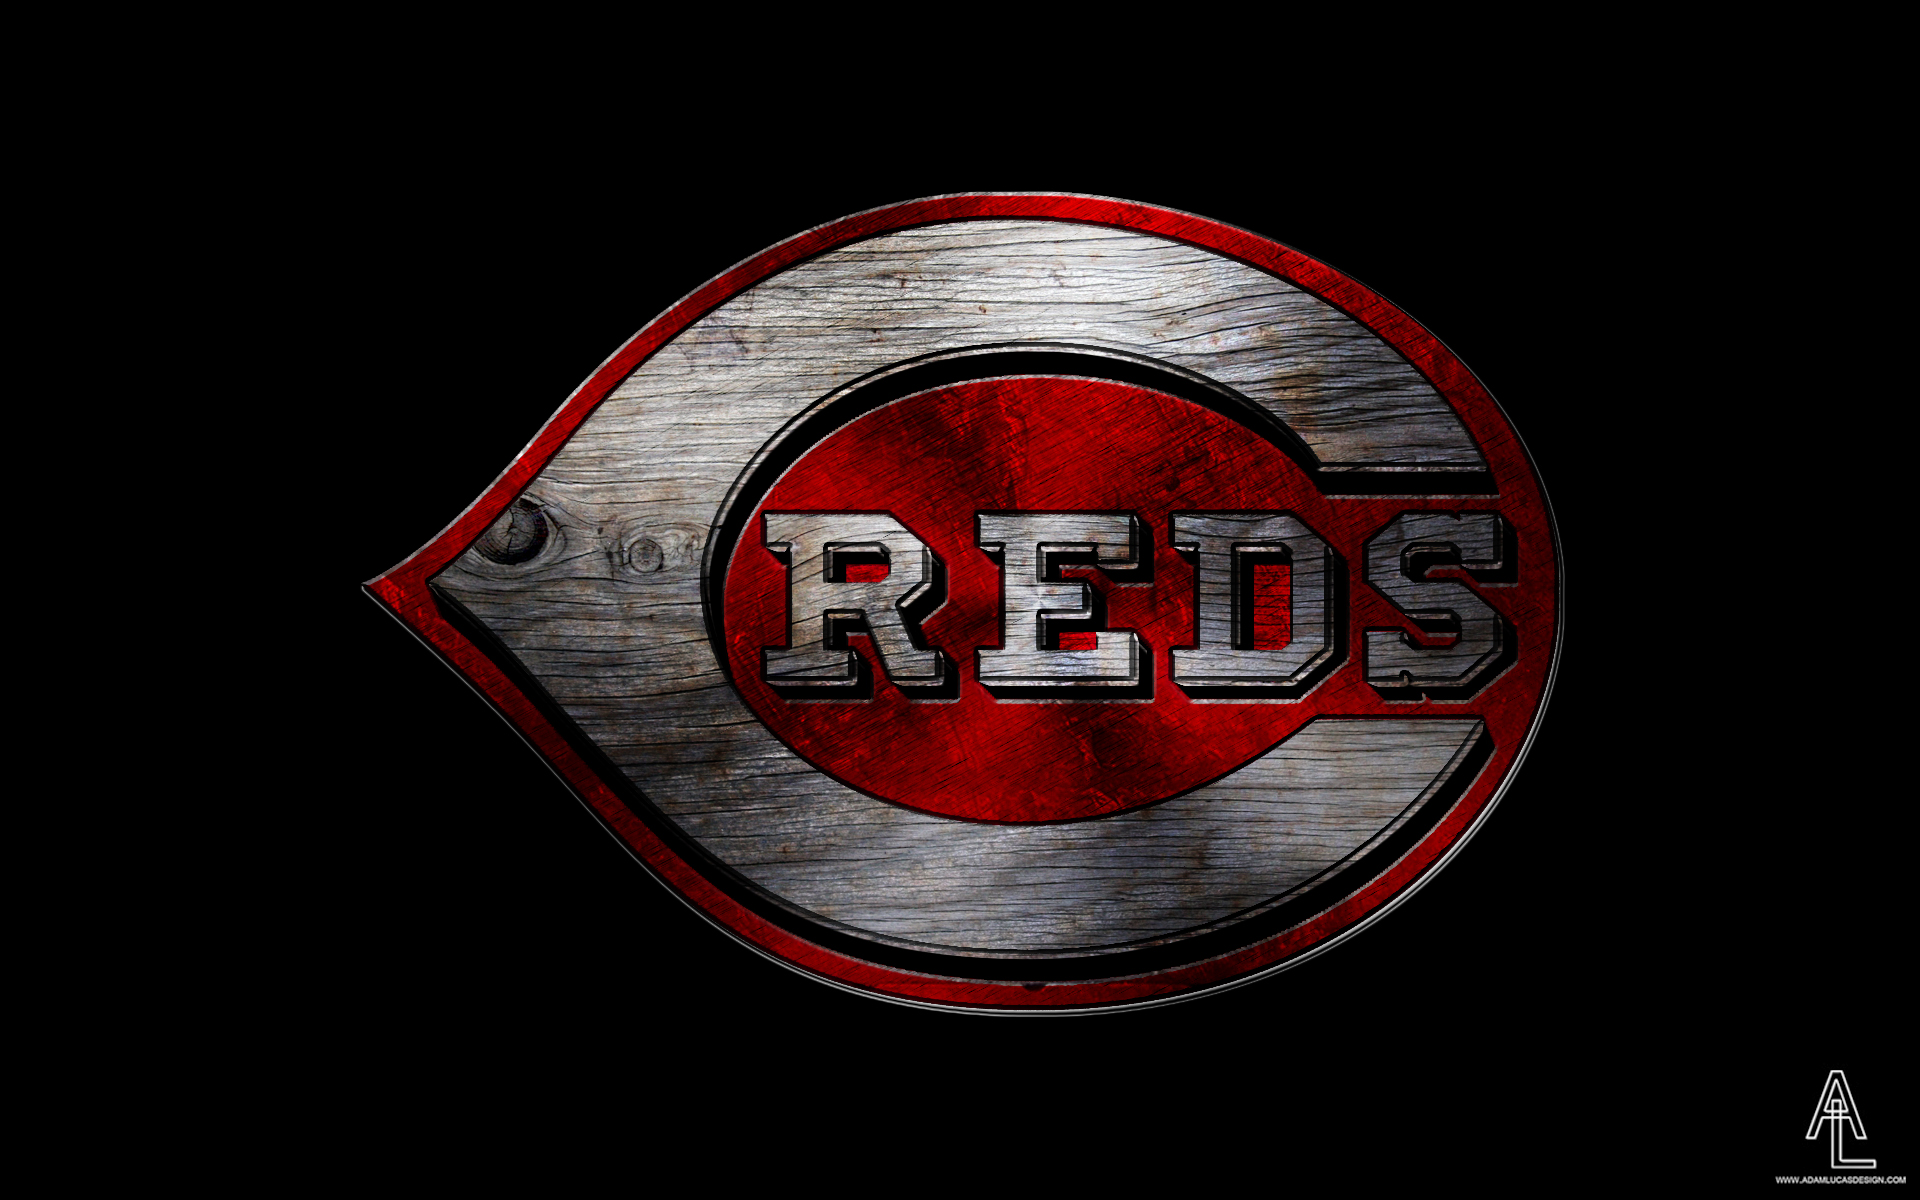 Reds Adam Lucas Designs